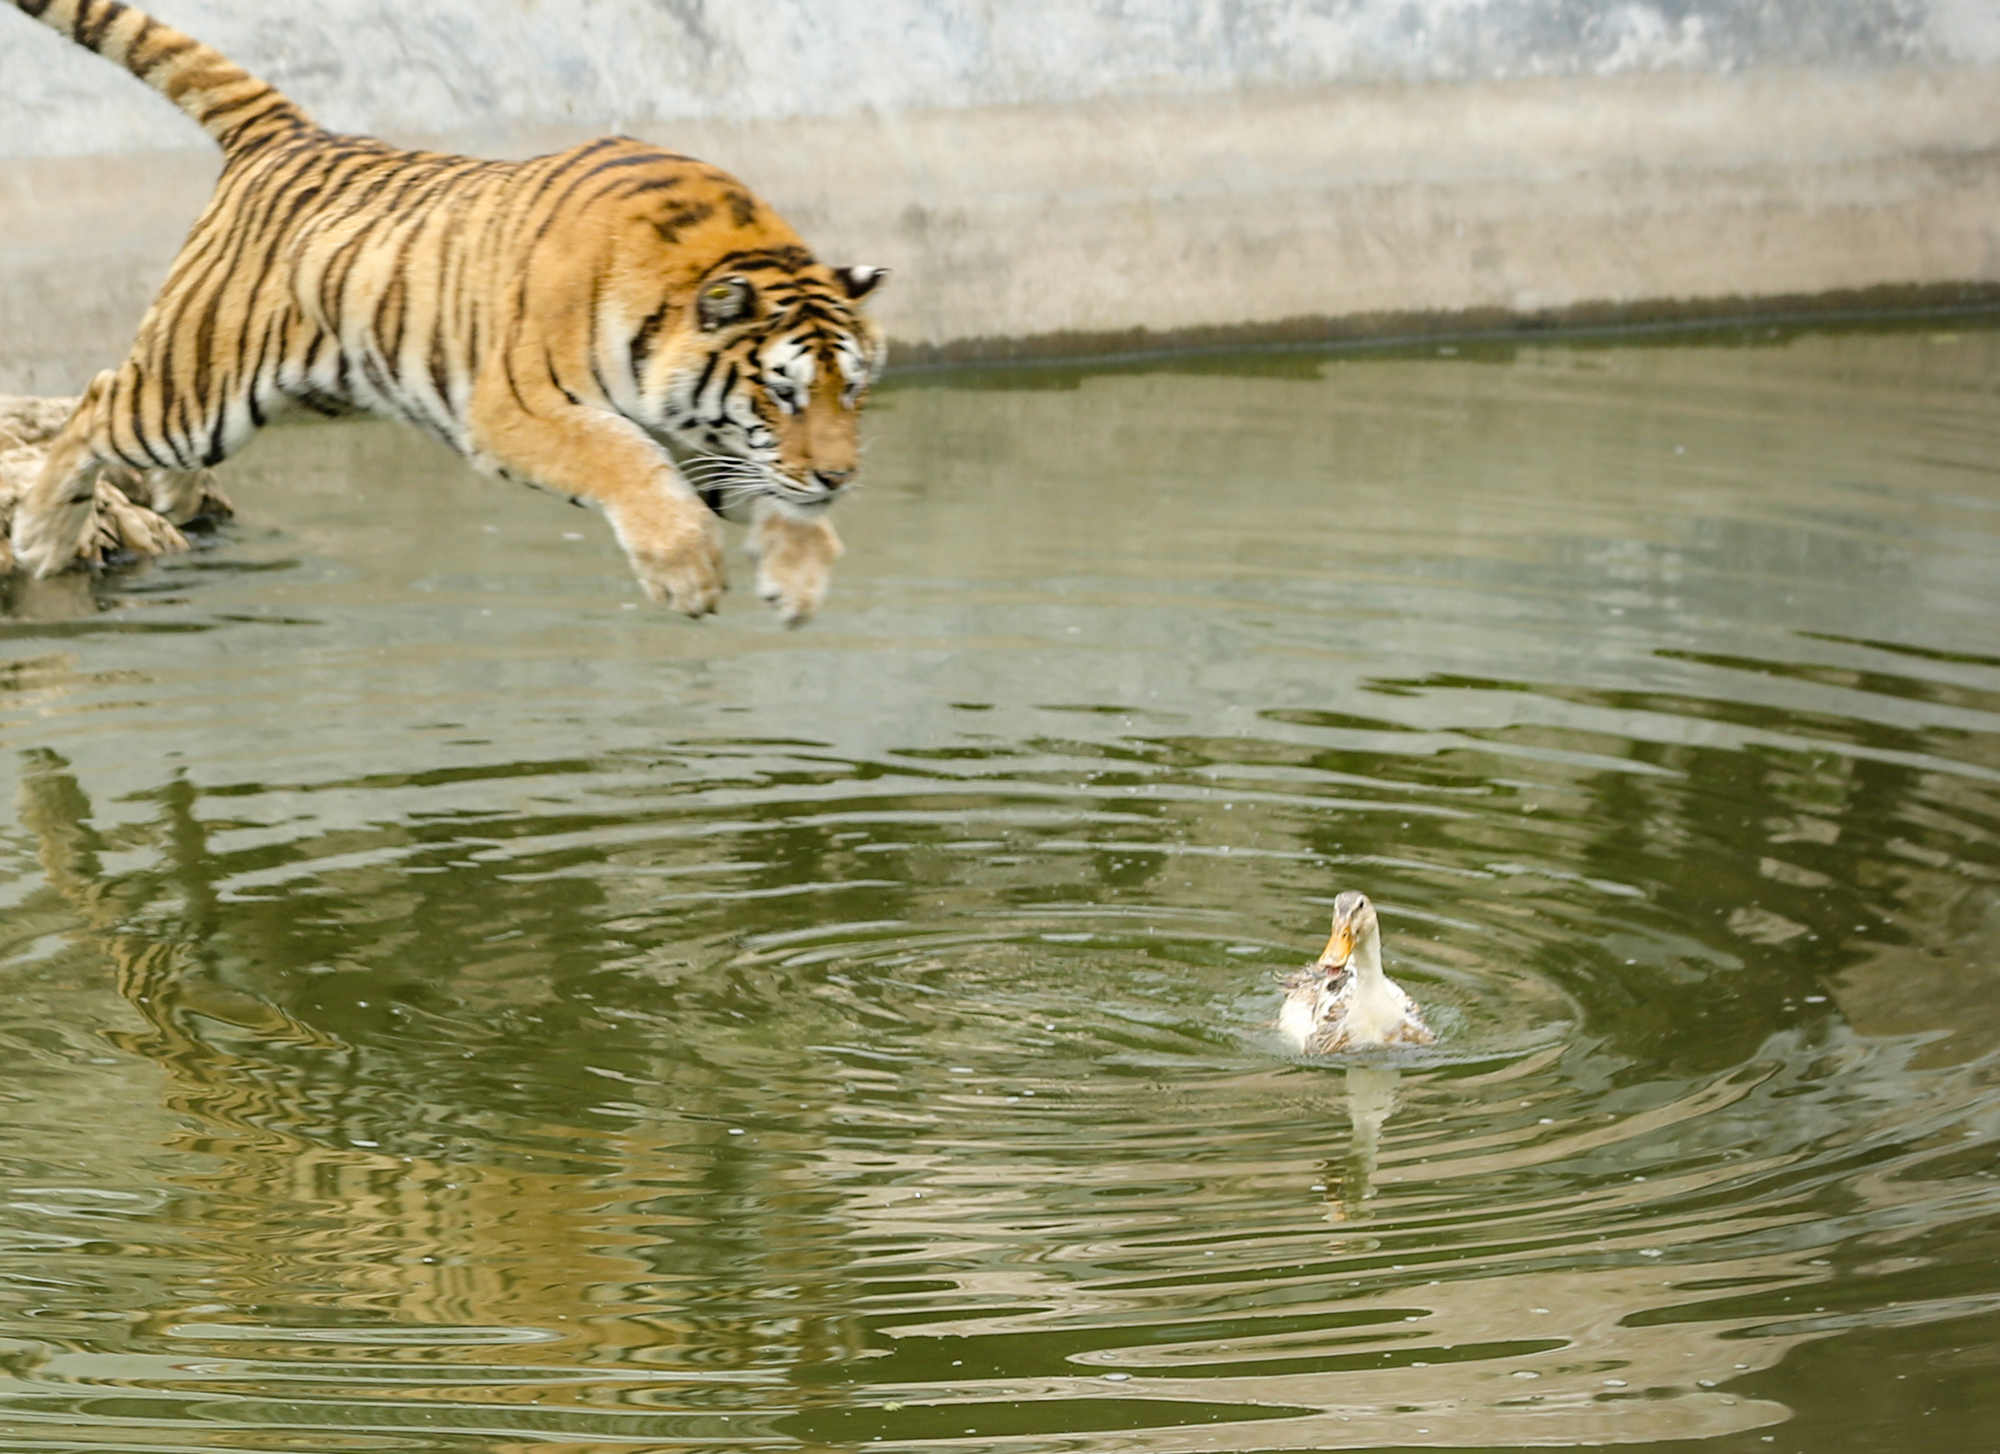 我想找那张…一只猫水下倒影是一只老虎的图片，请问谁有啊？ - 知乎